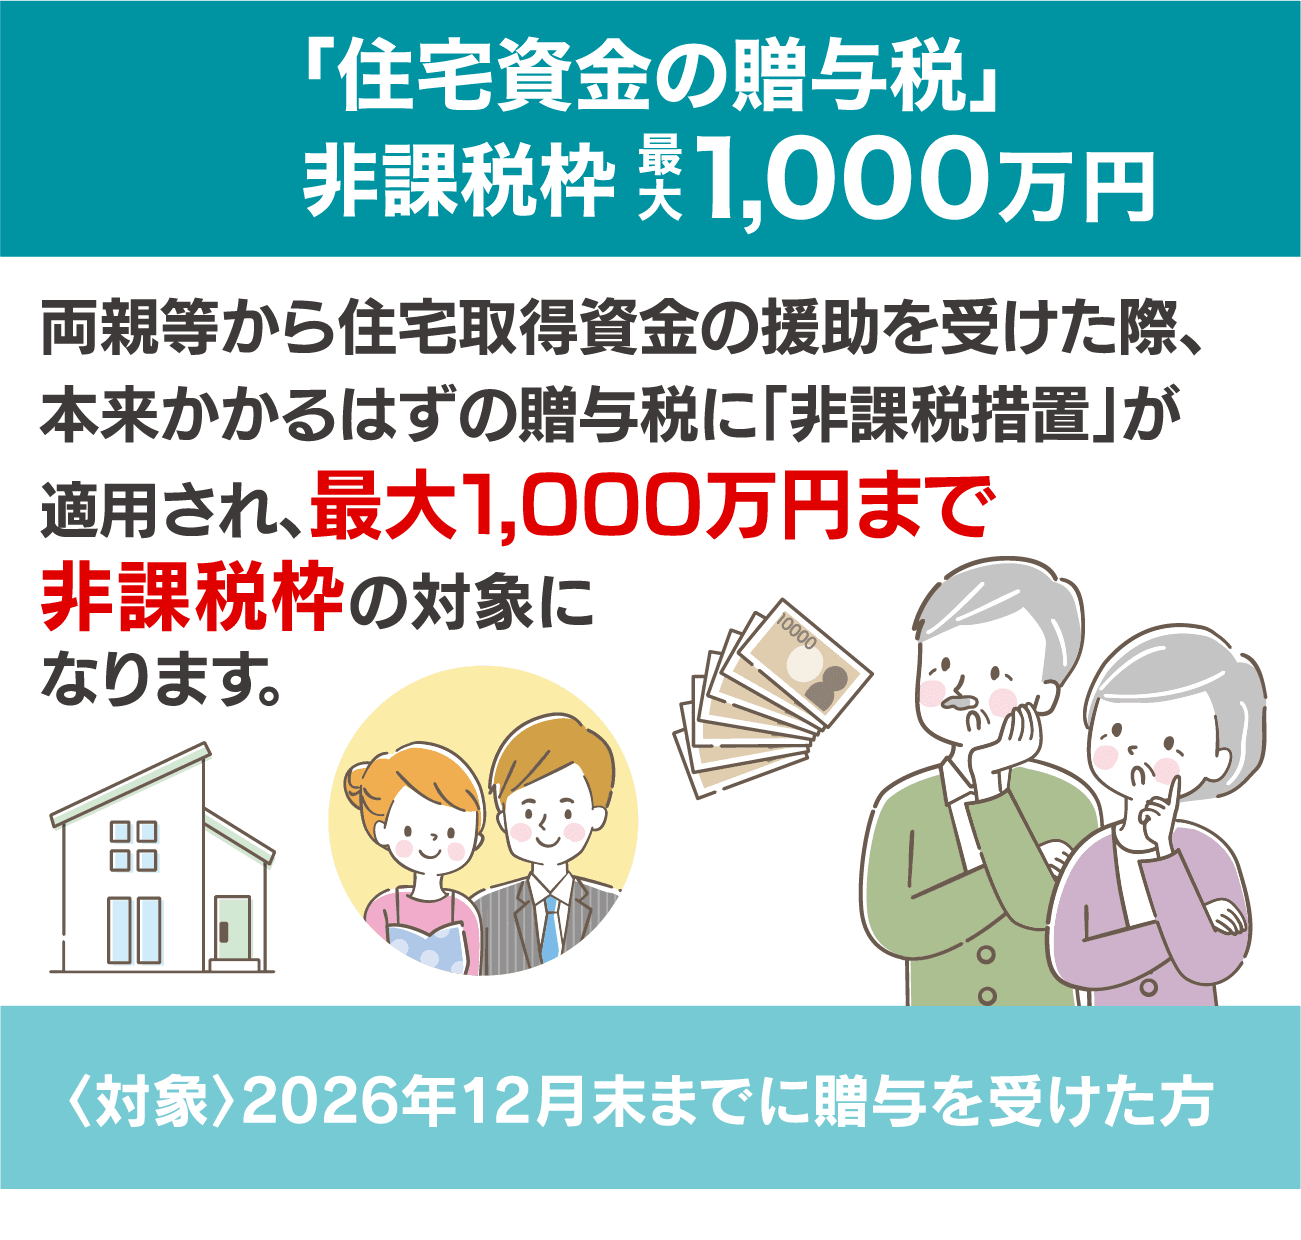 「住宅資金の贈与税」非課税枠最大1,000万円